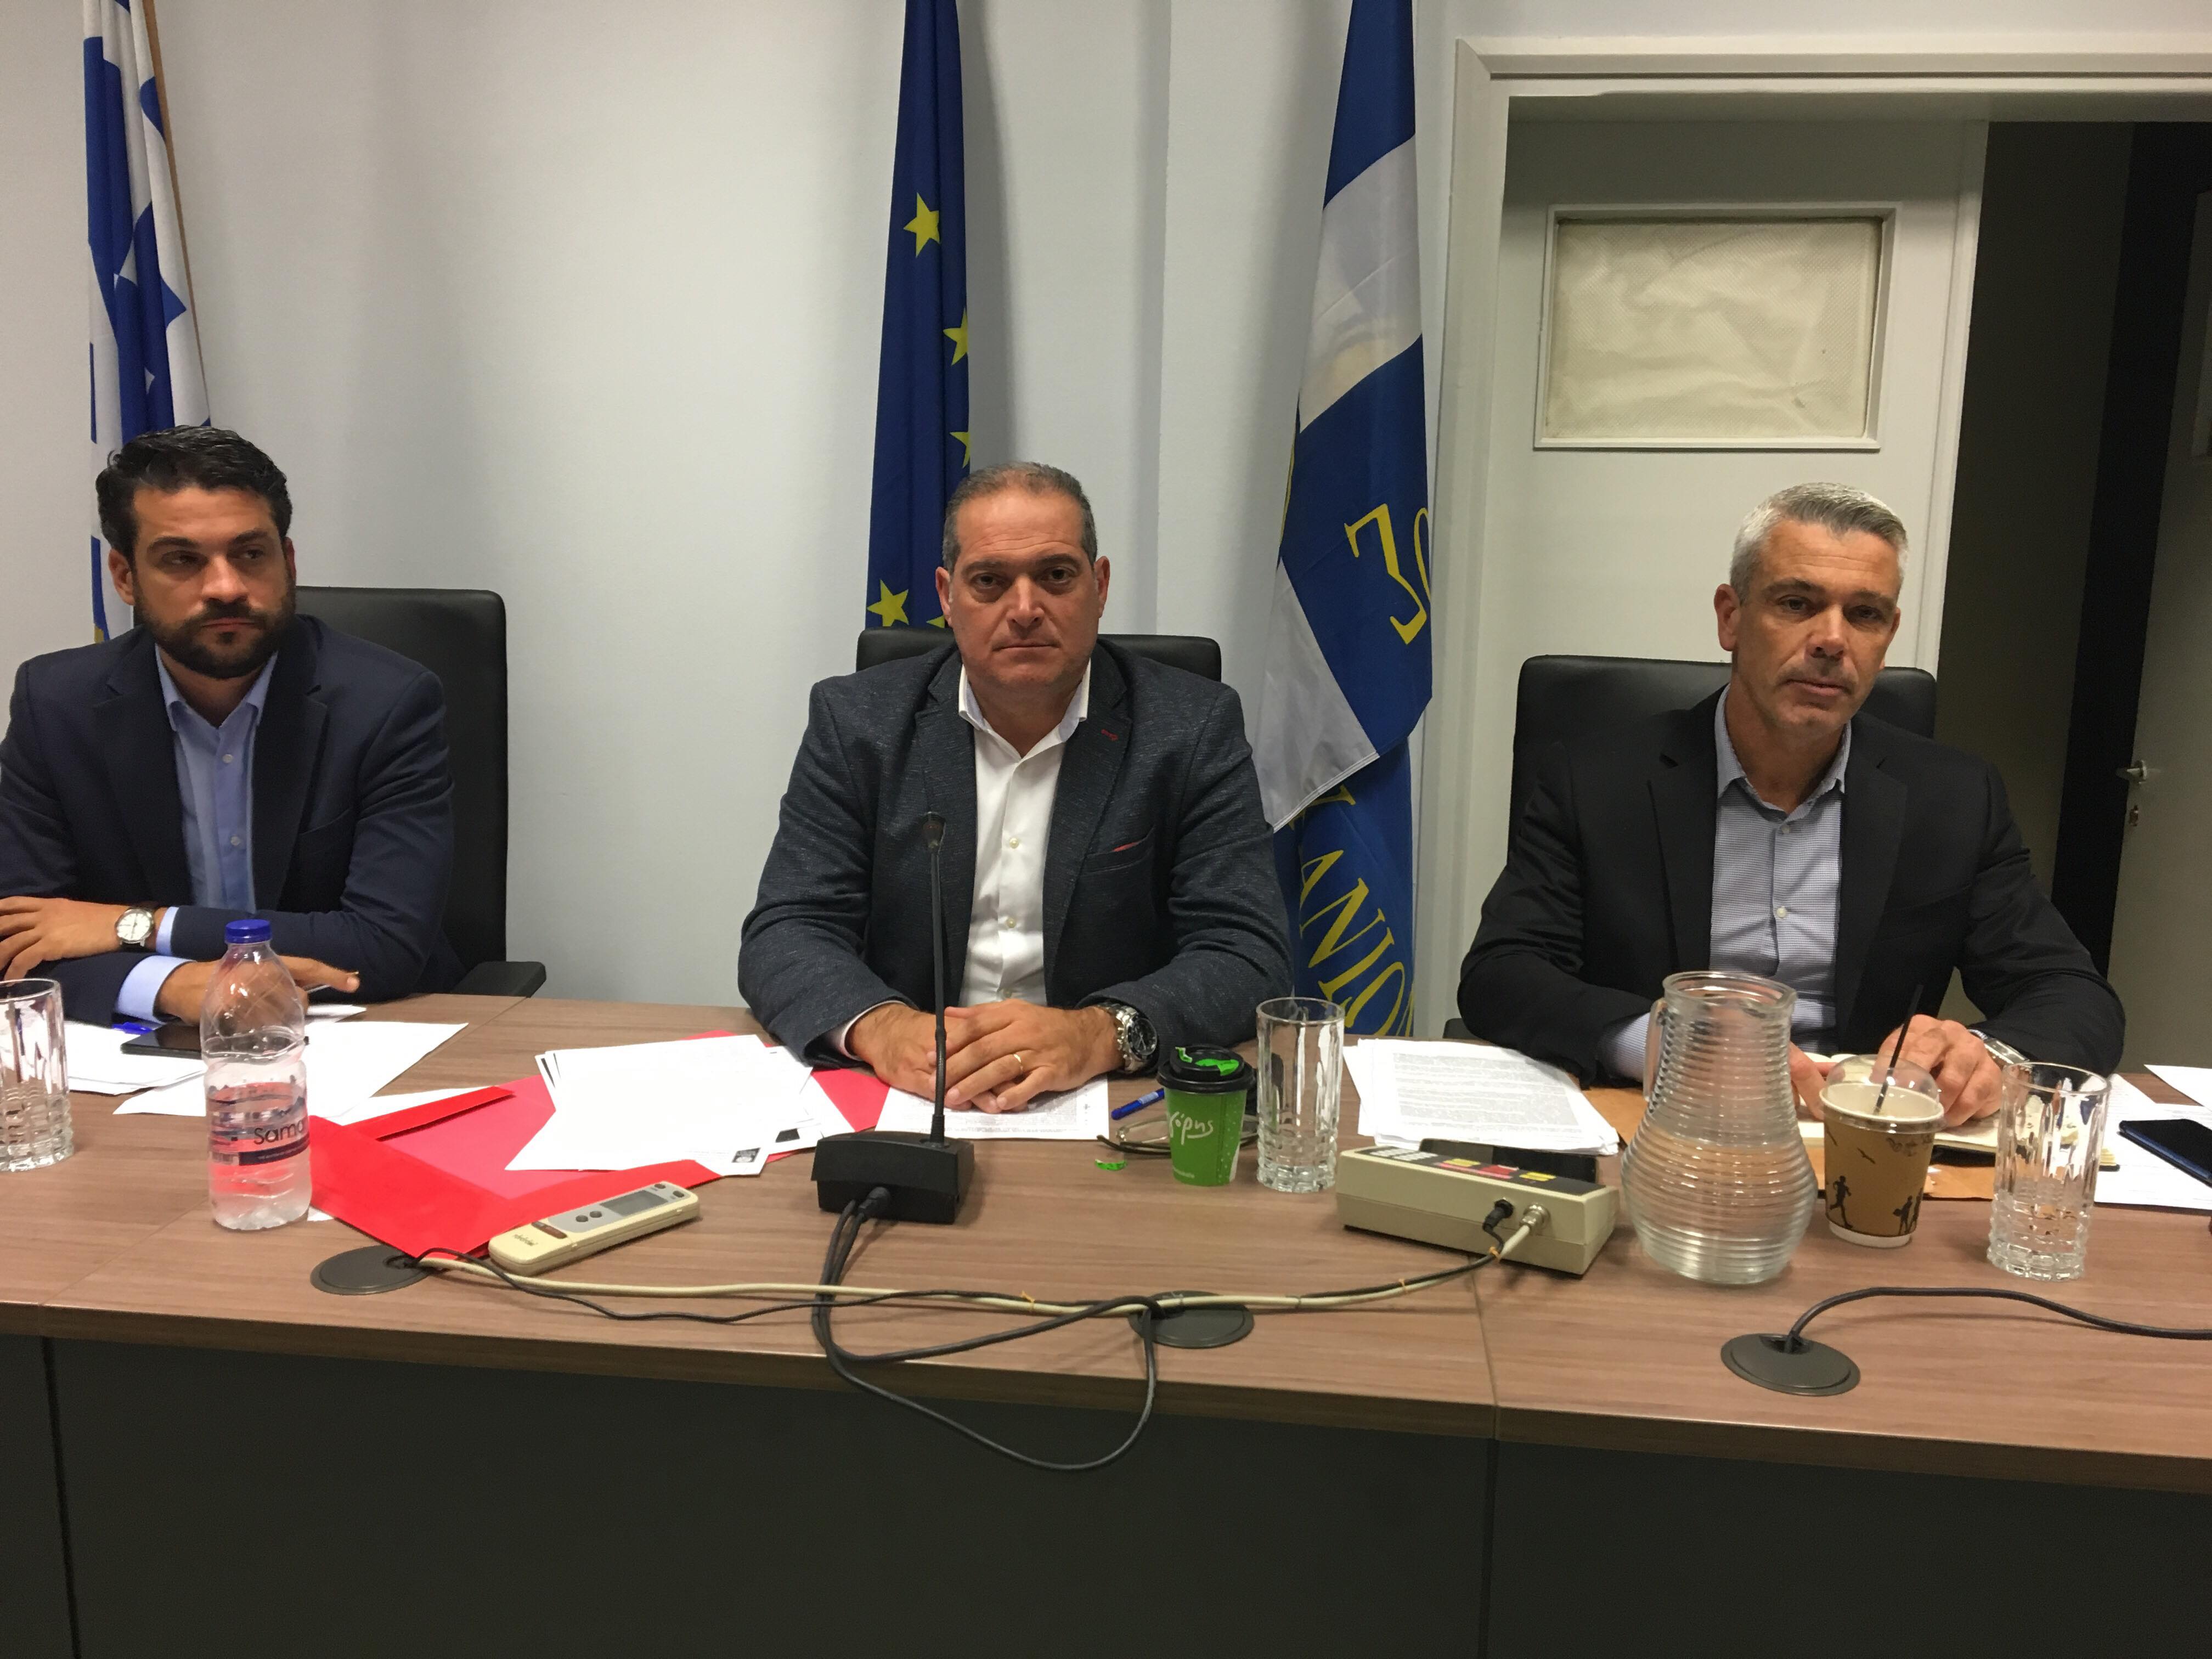 Ο δήμος Χανίων συλλέγει είδη πρώτης ανάγκης για τους πληγέντες στην Αλβανία